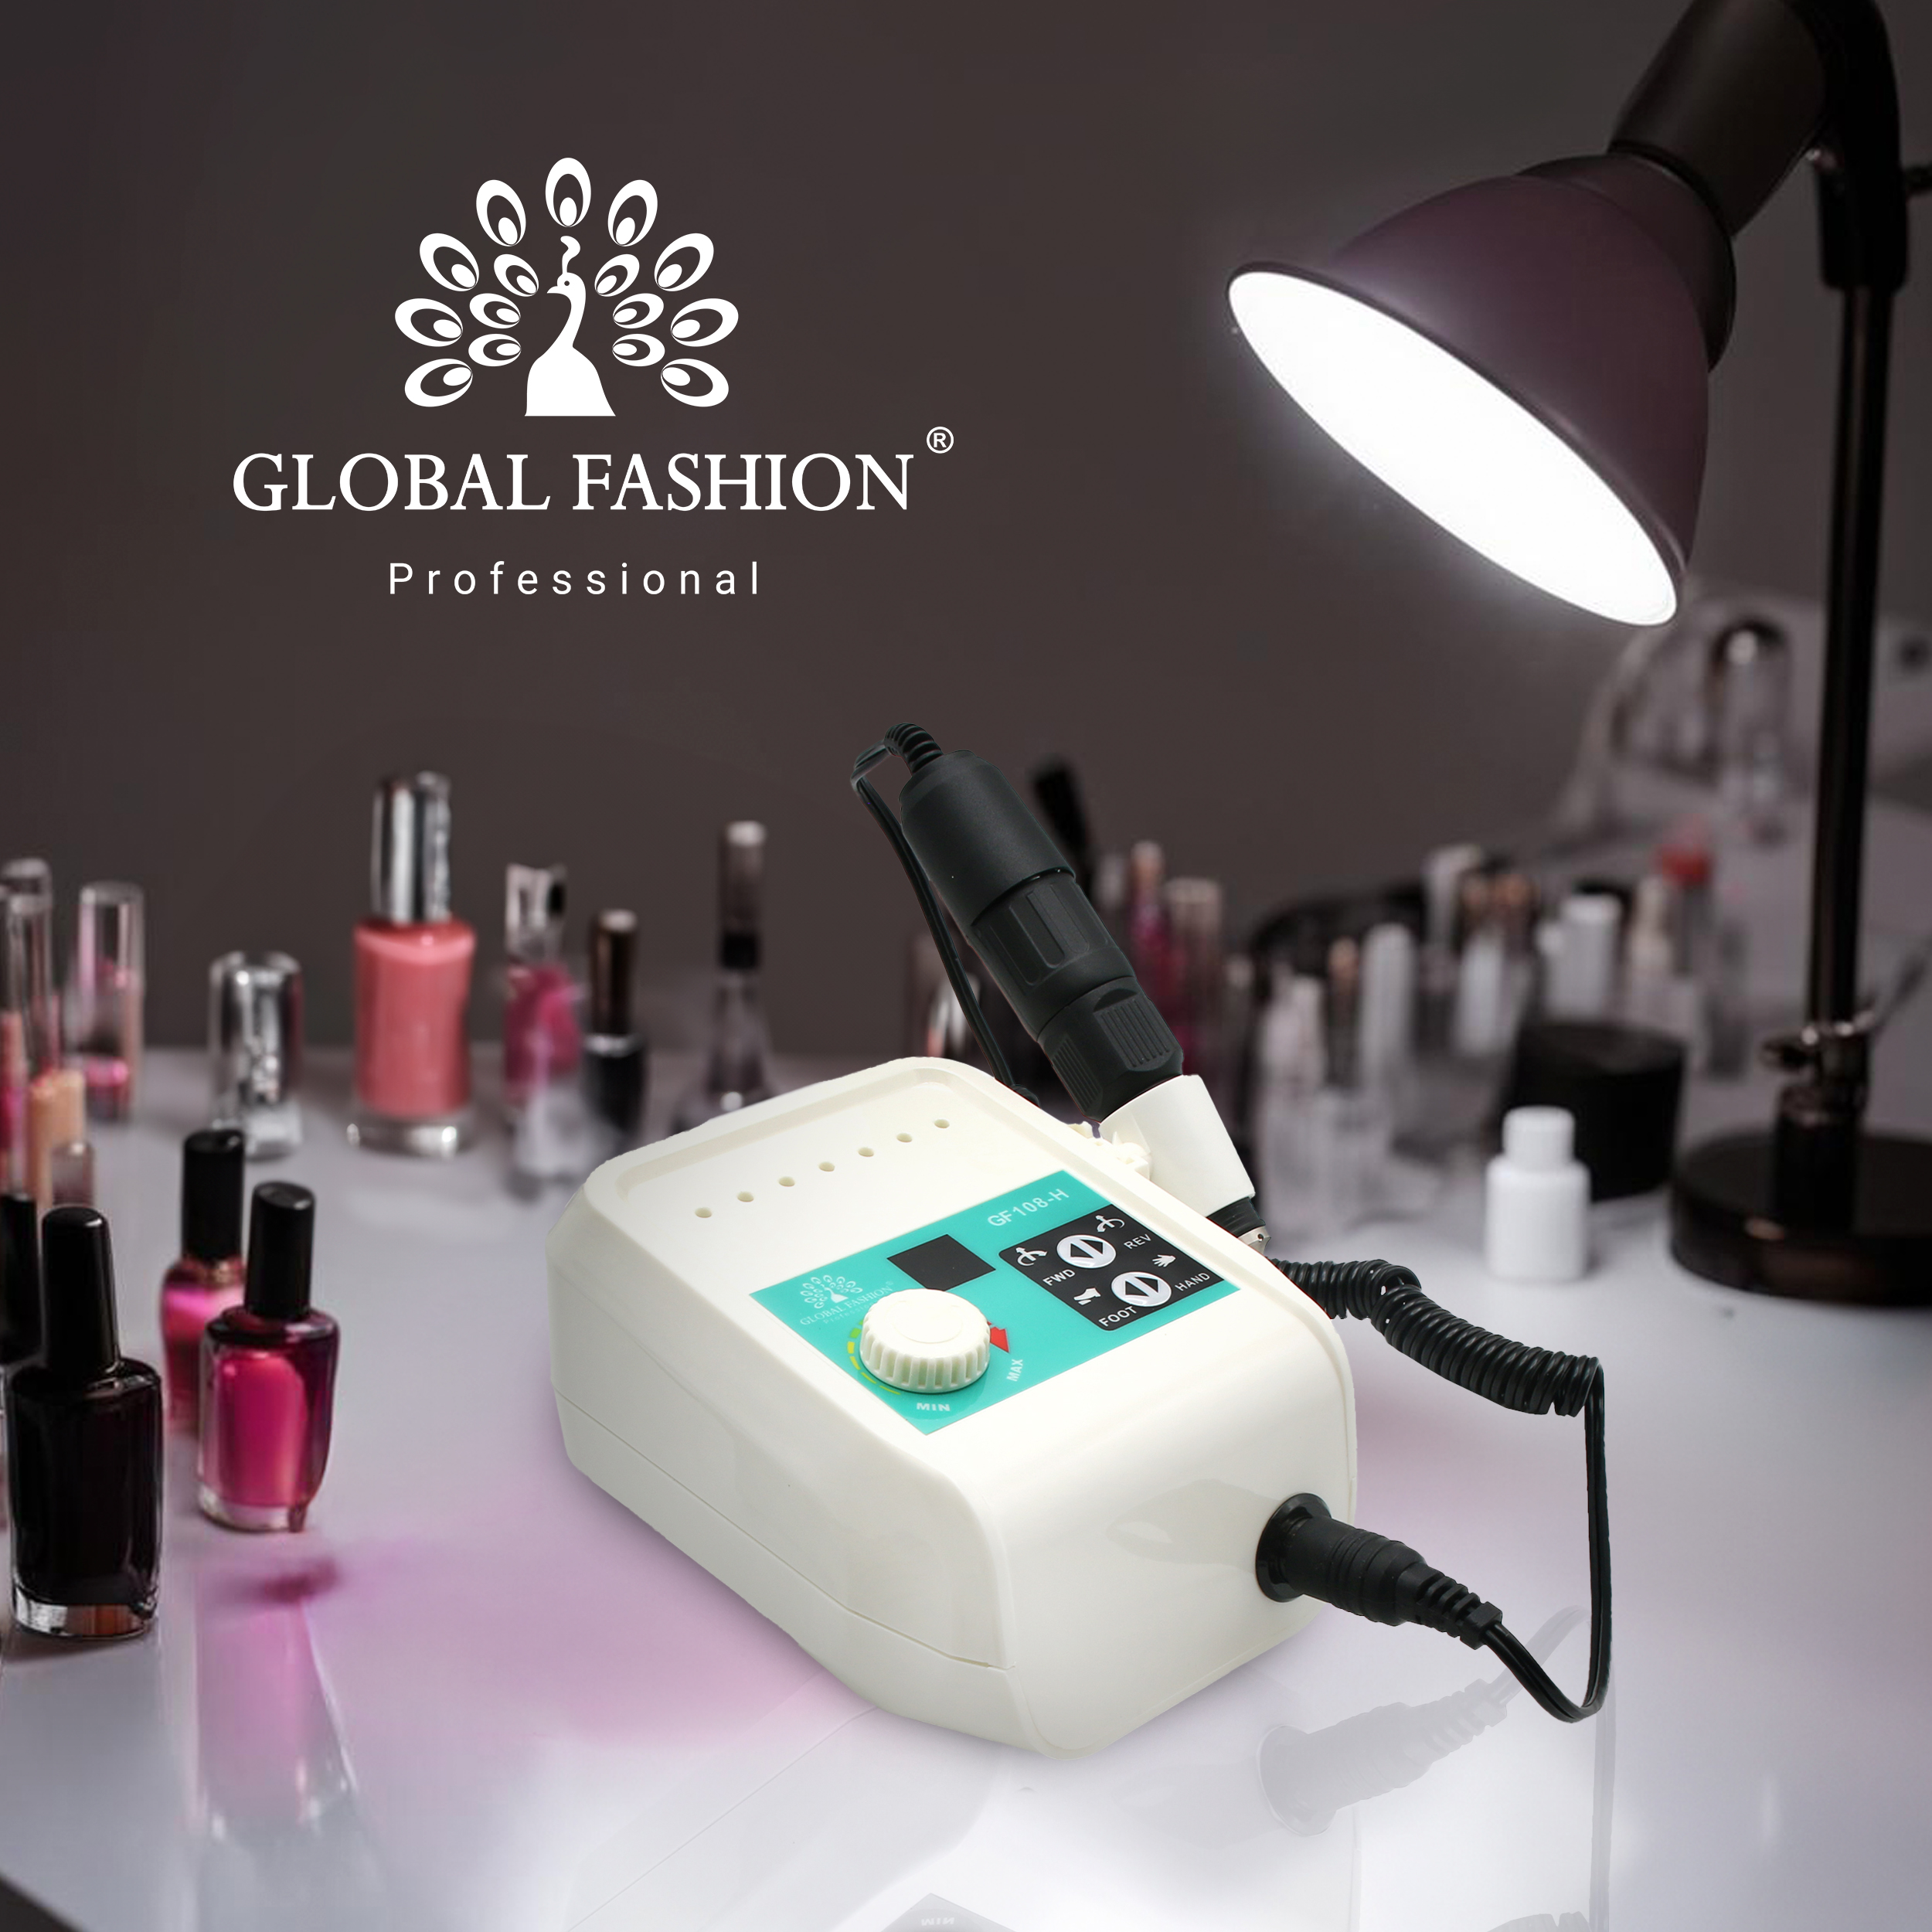 Професійний фрезер для манікюру GF-108-H Global Fashion 100W 45000 об/хв: якісний продукт від виробника